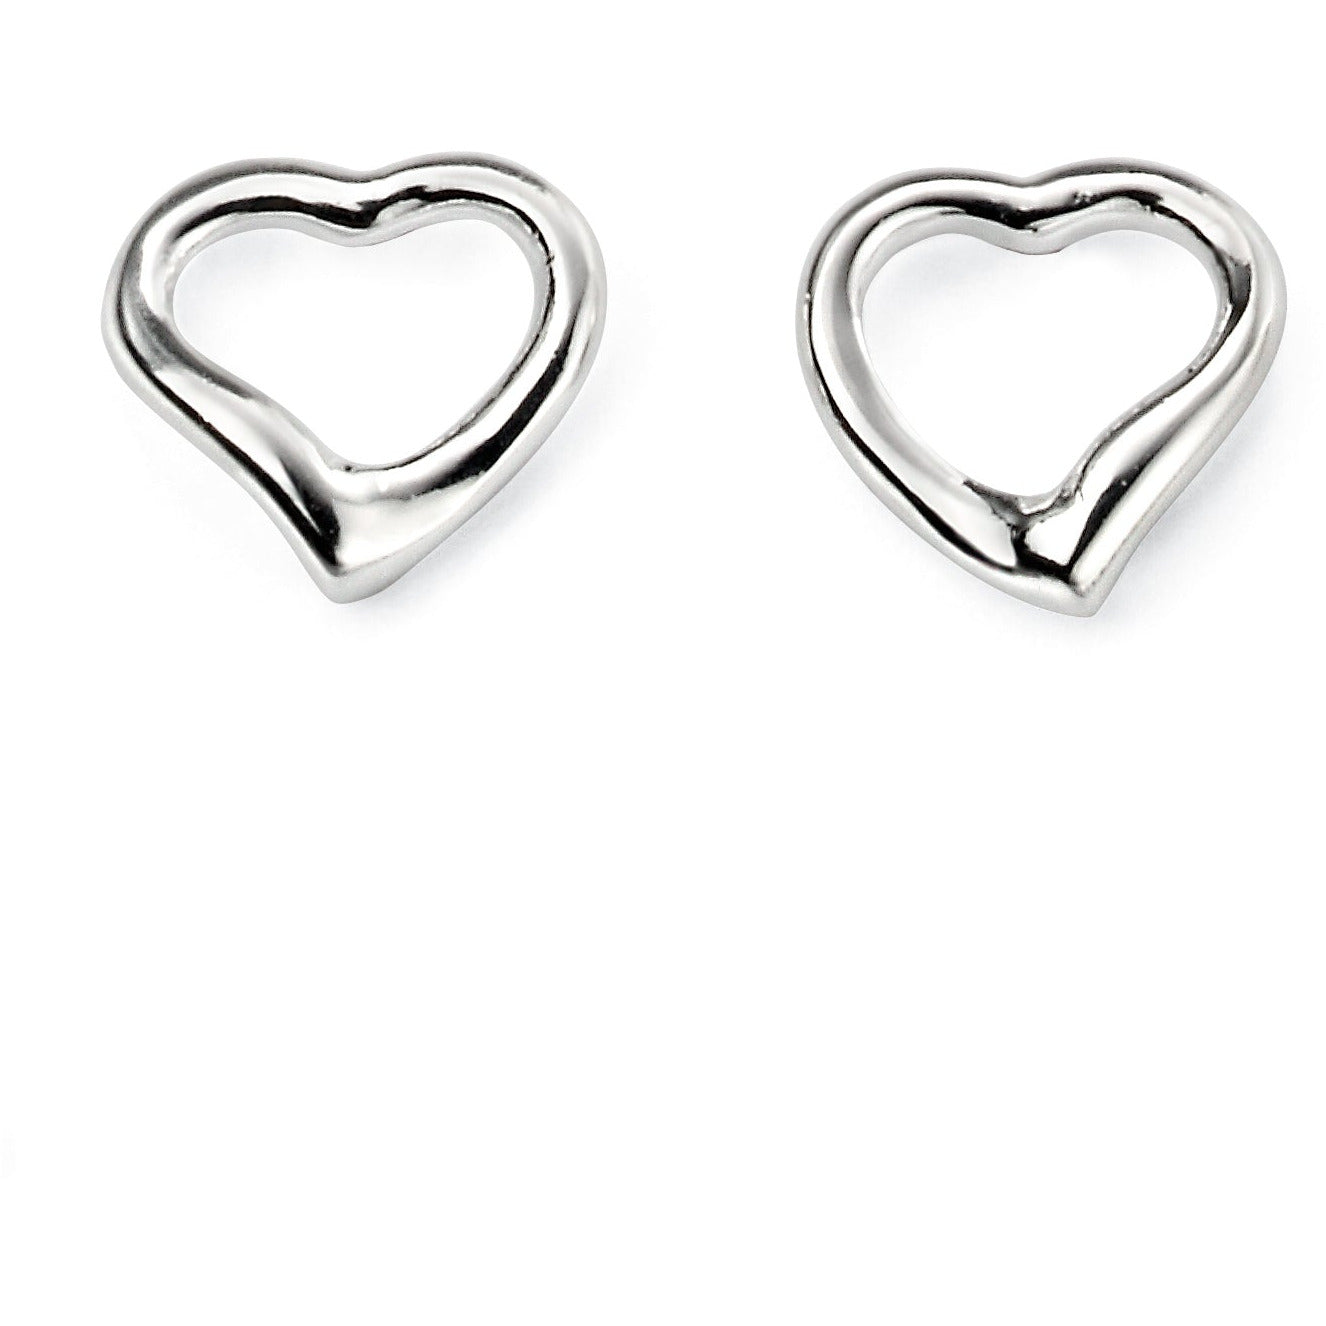 Small Open Heart Stud Earrings